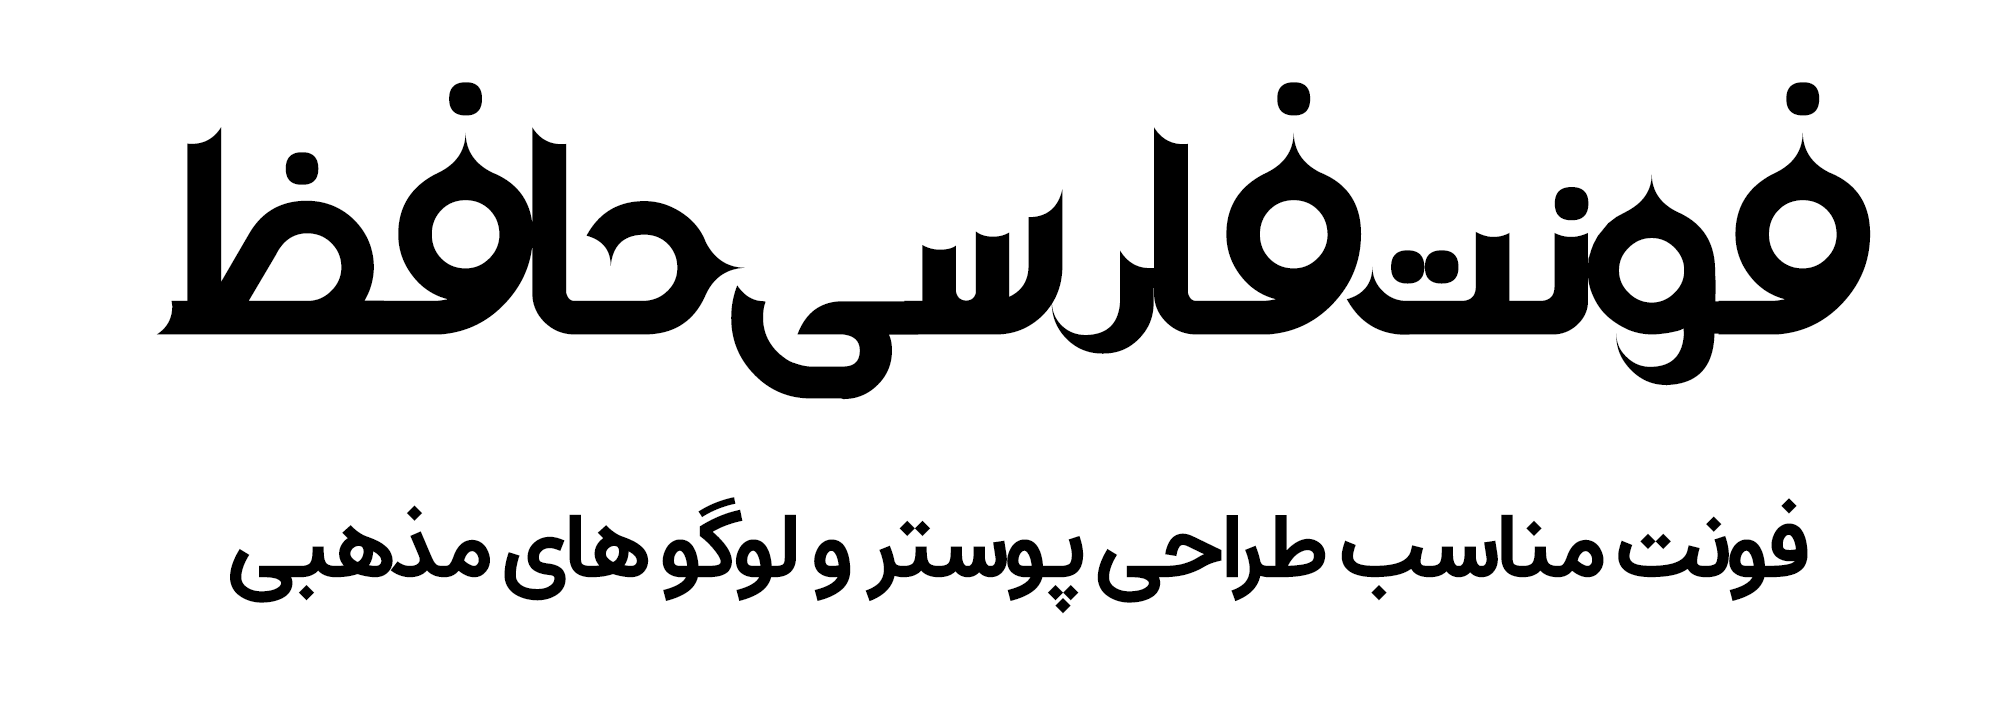 دانلود فونت فارسی حافظ